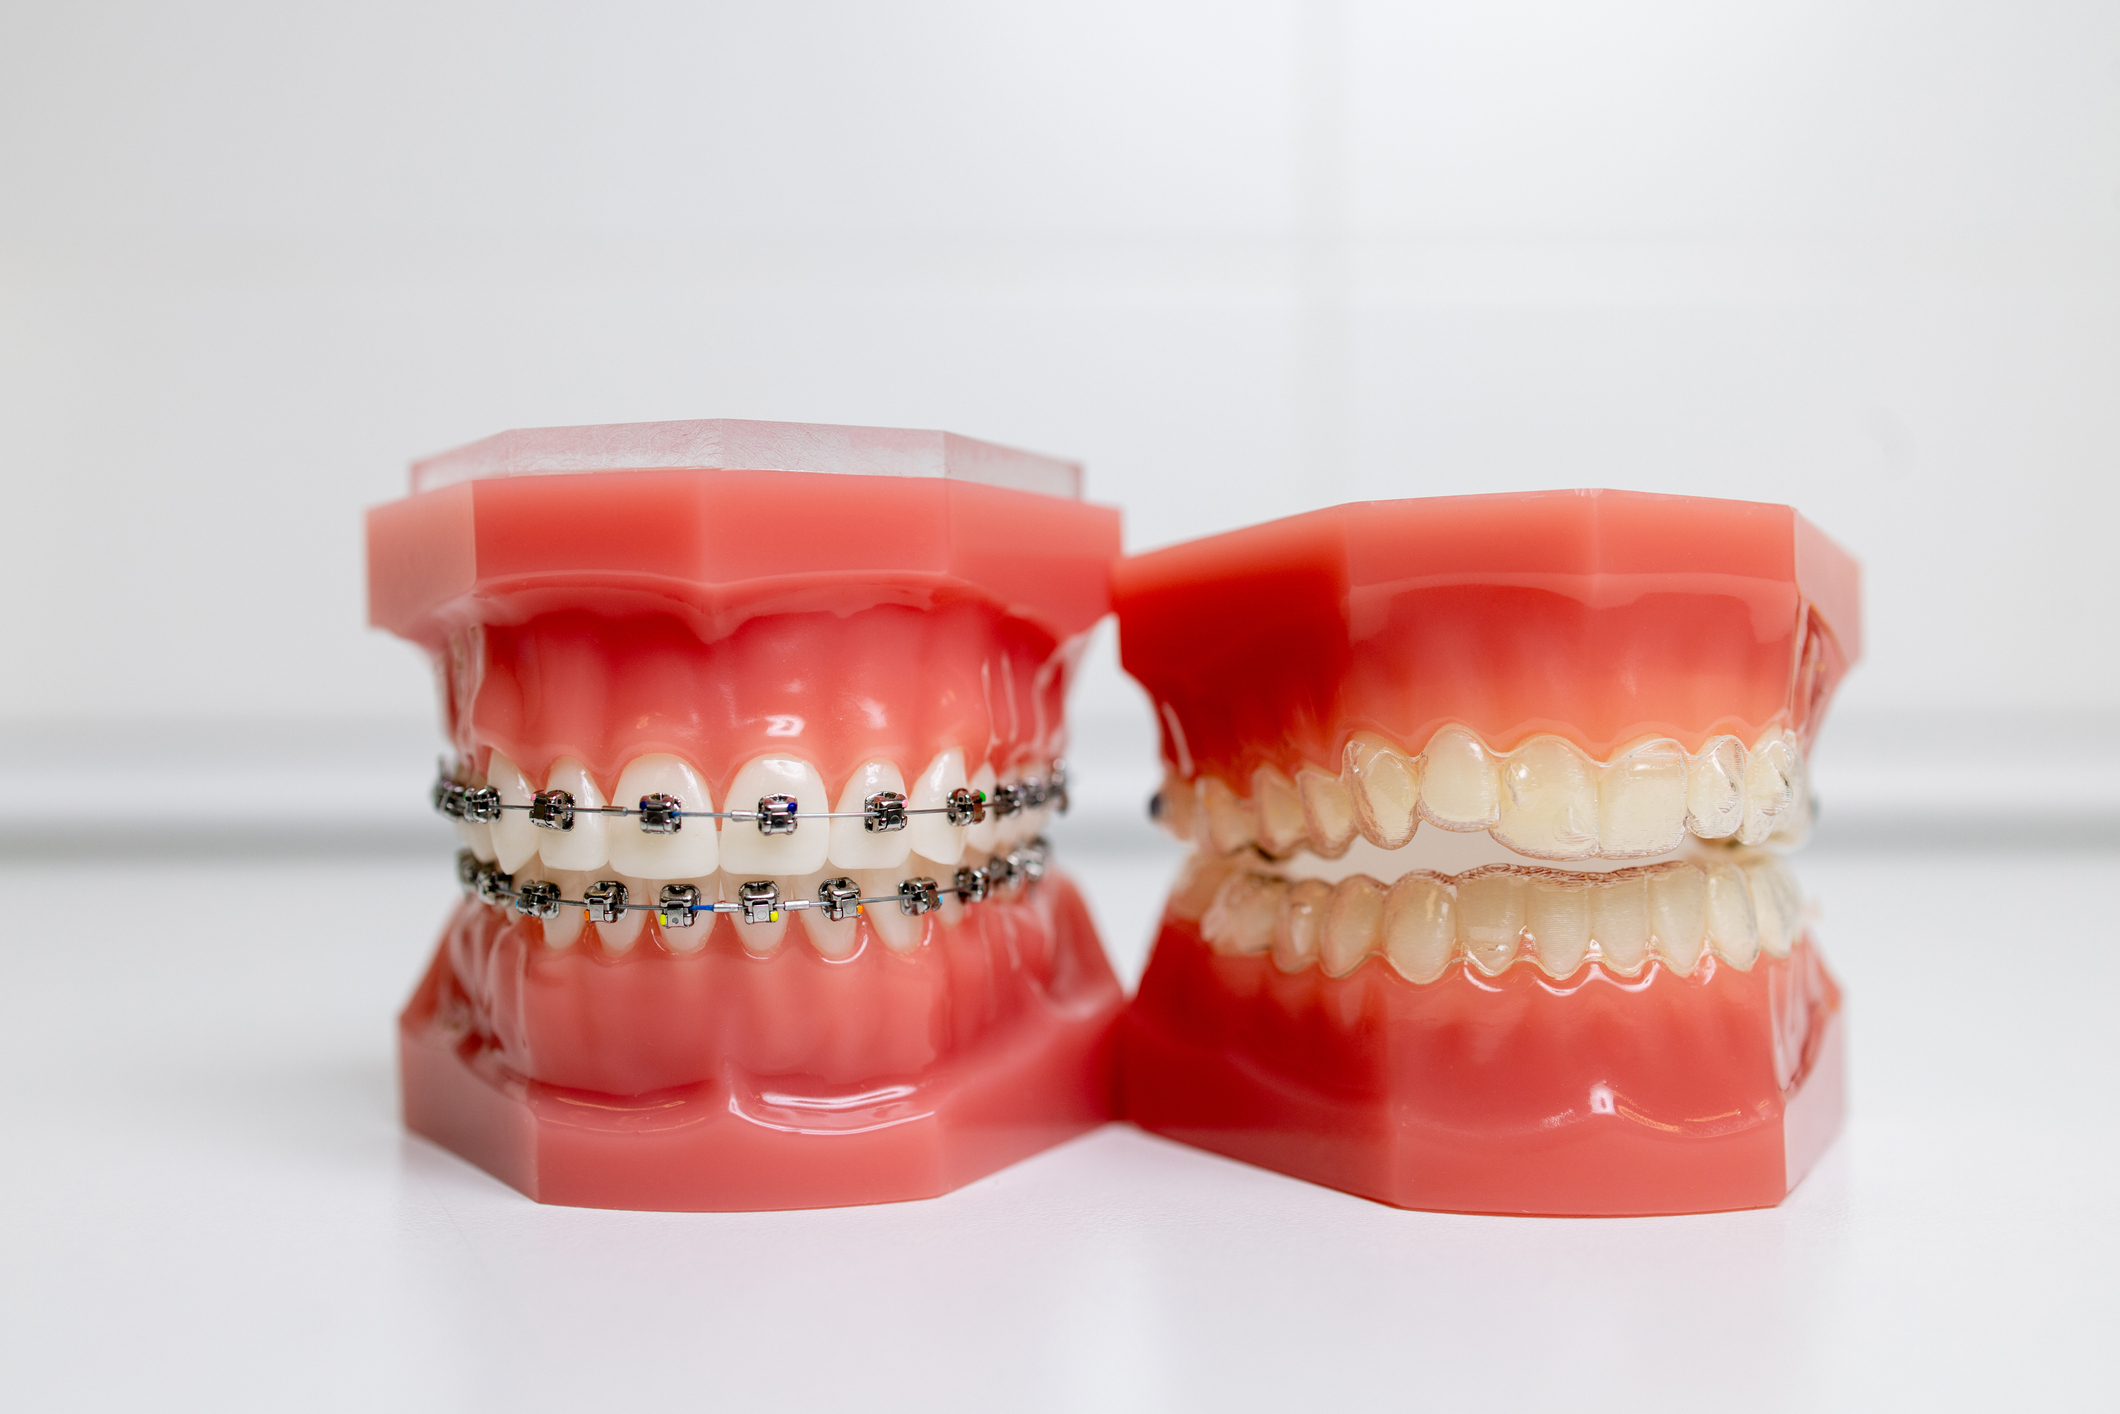 tratamiento de ortodoncia elegir